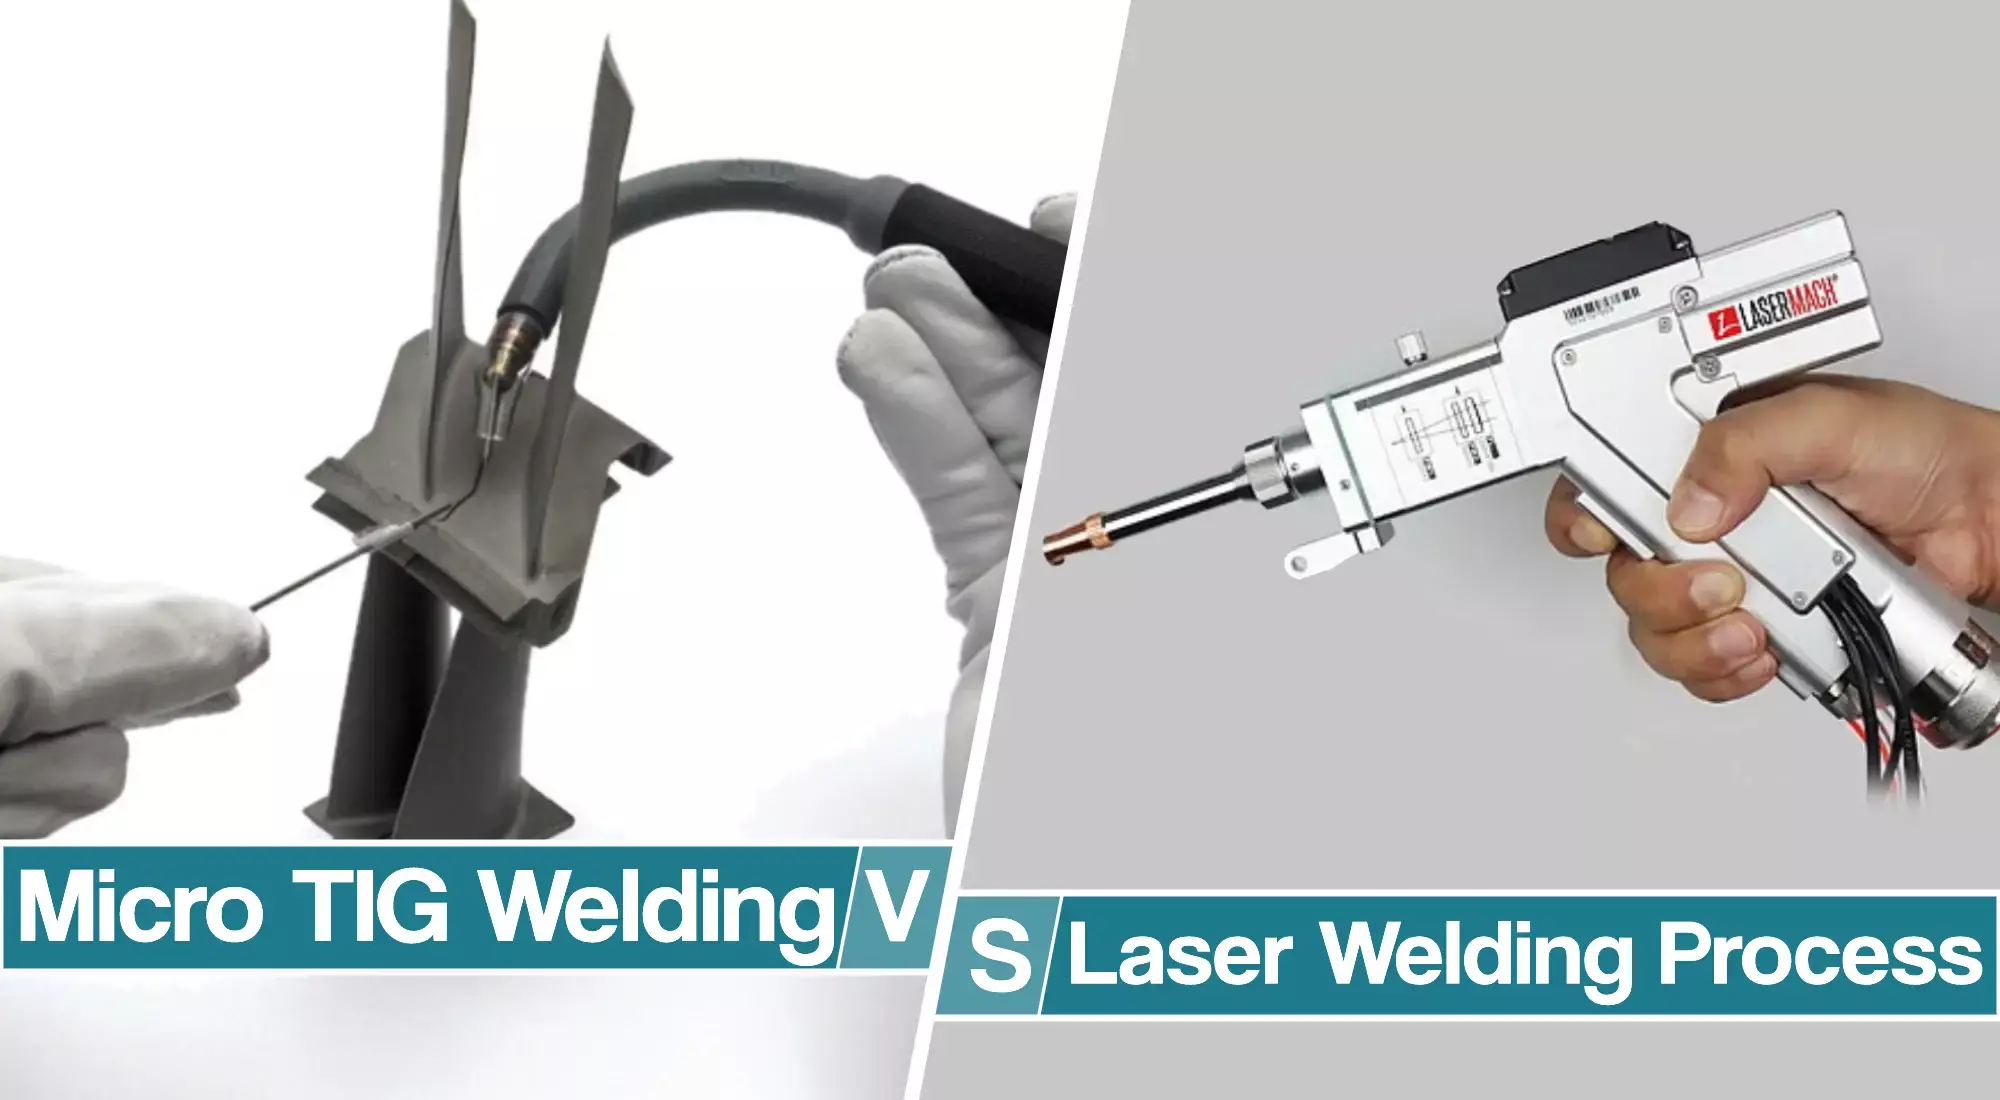 Laser Welding Vs. Micro TIG welding – Head-To-Head